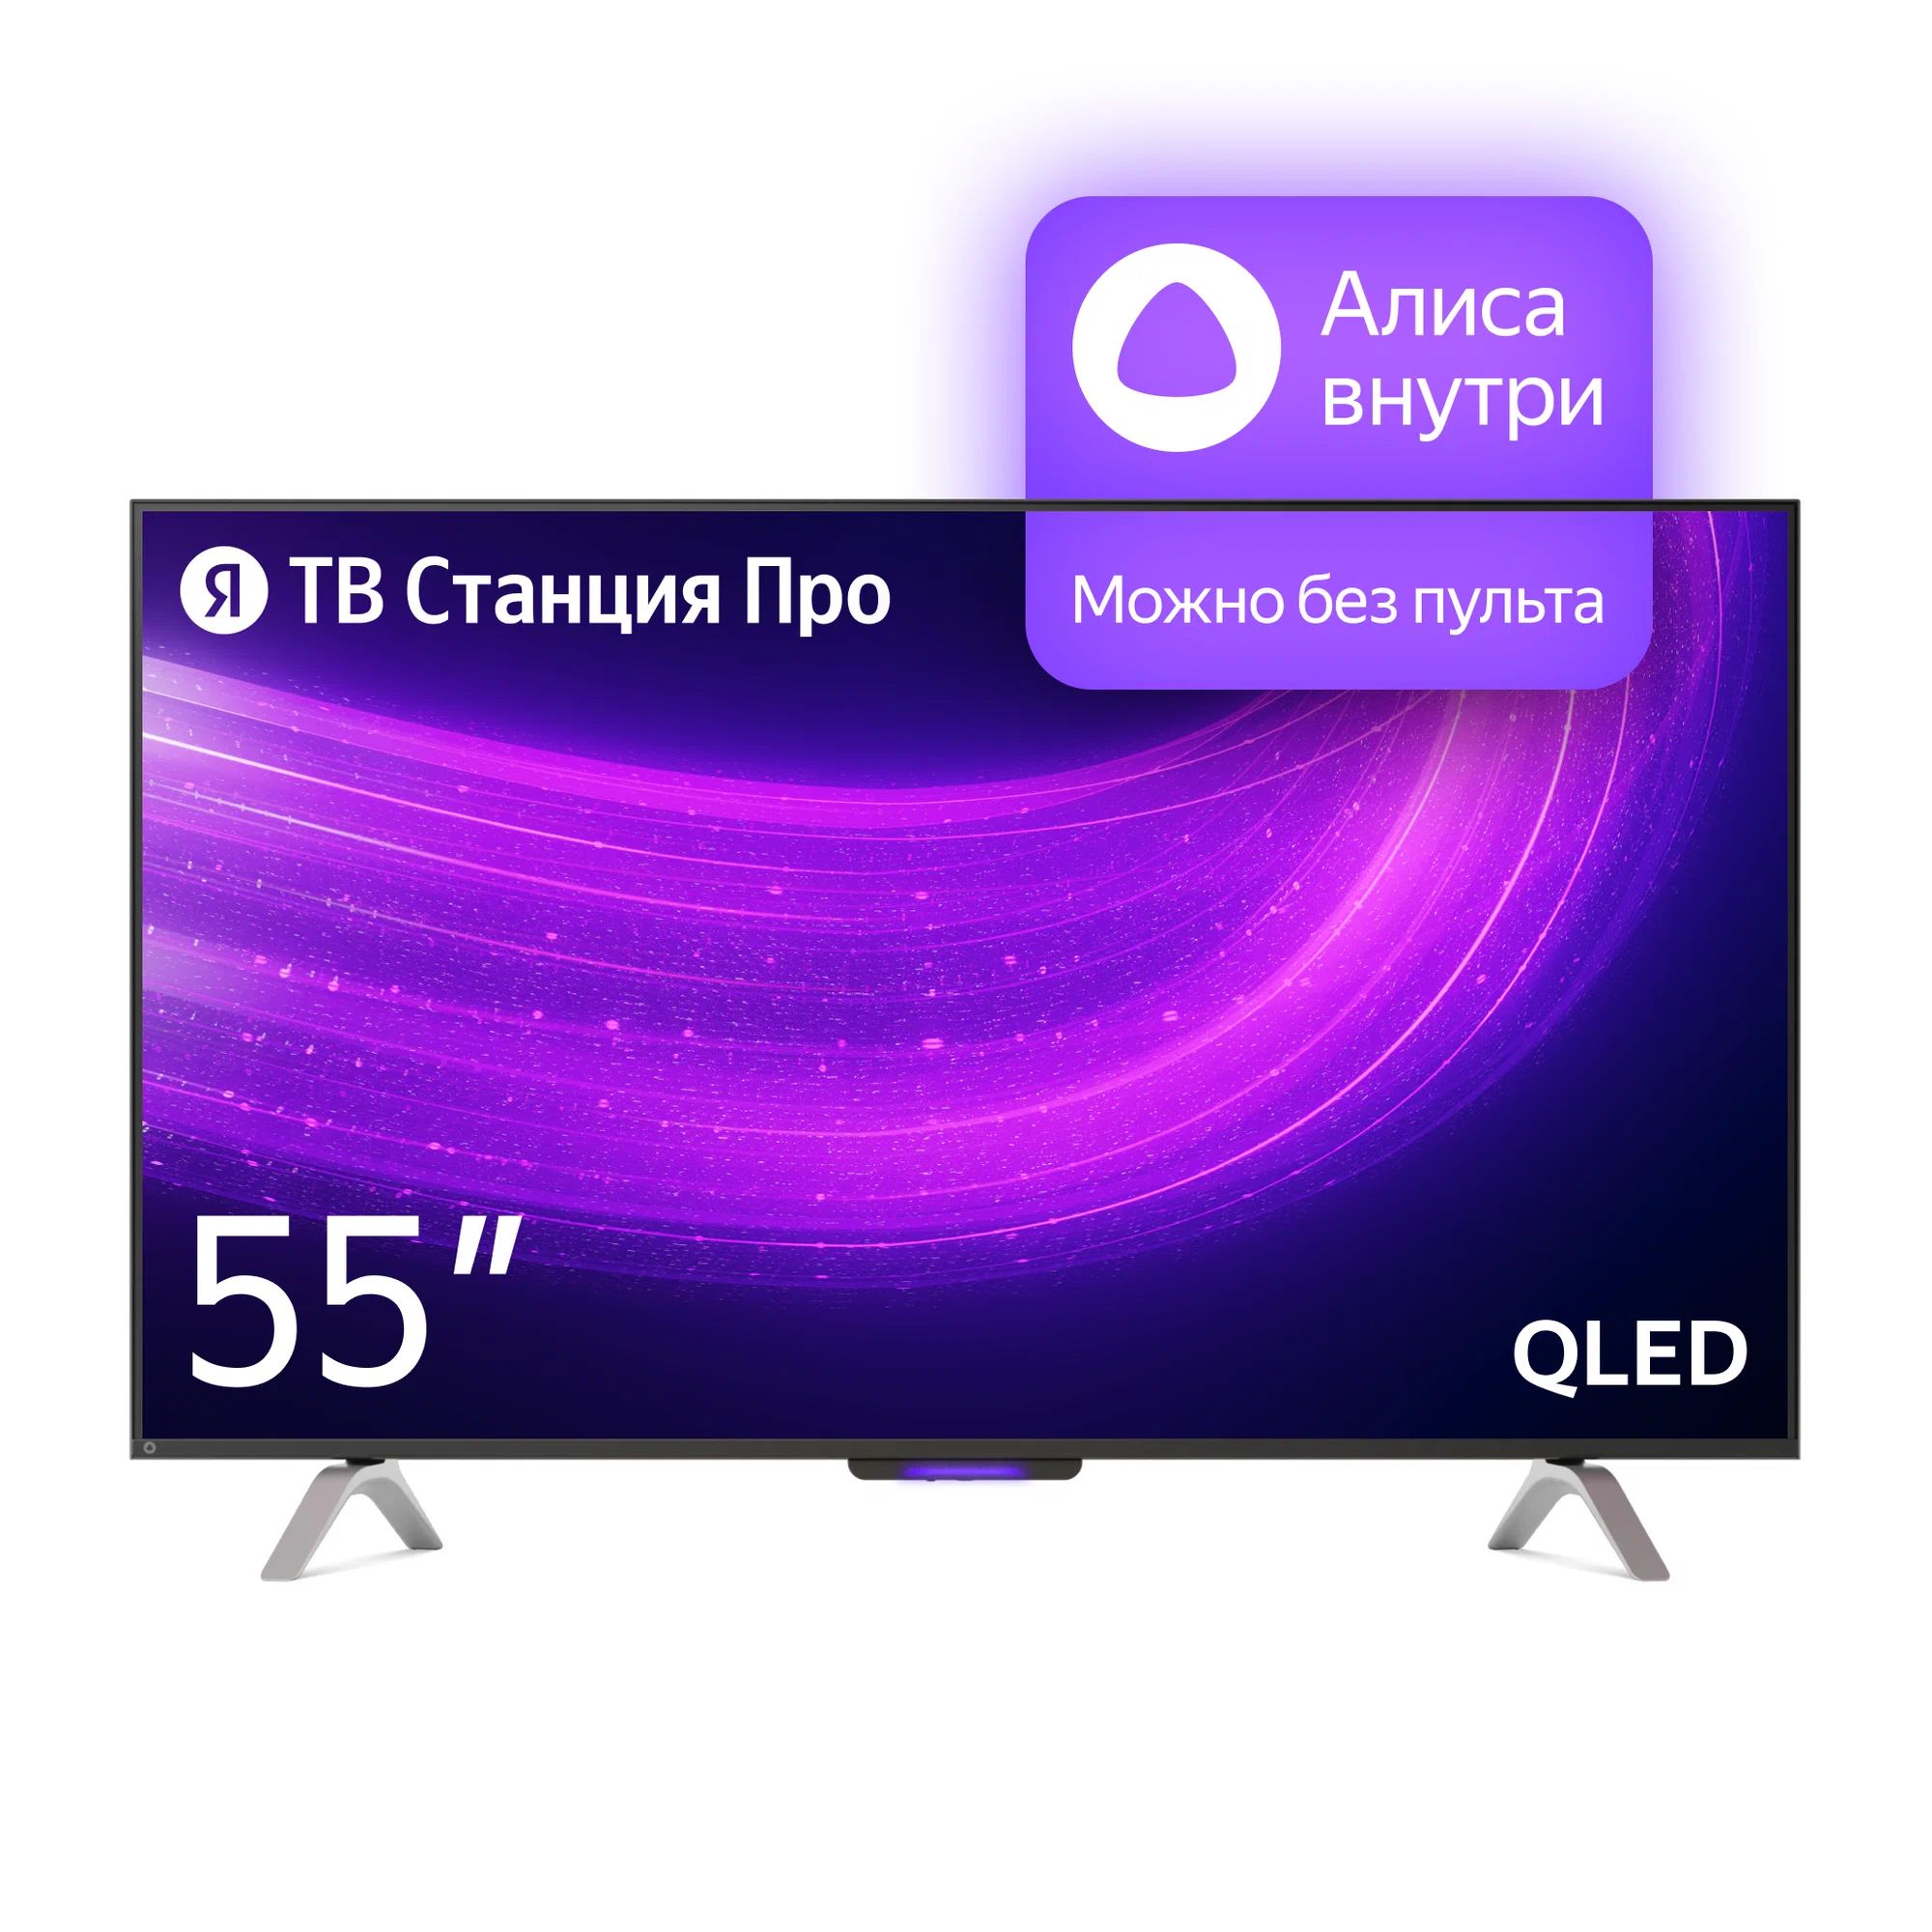 Телевизор Яндекс YNDX-00101 PRO Тв станция с Алисой 55 телевизор яндекс тв станция про 65 yndx 00102